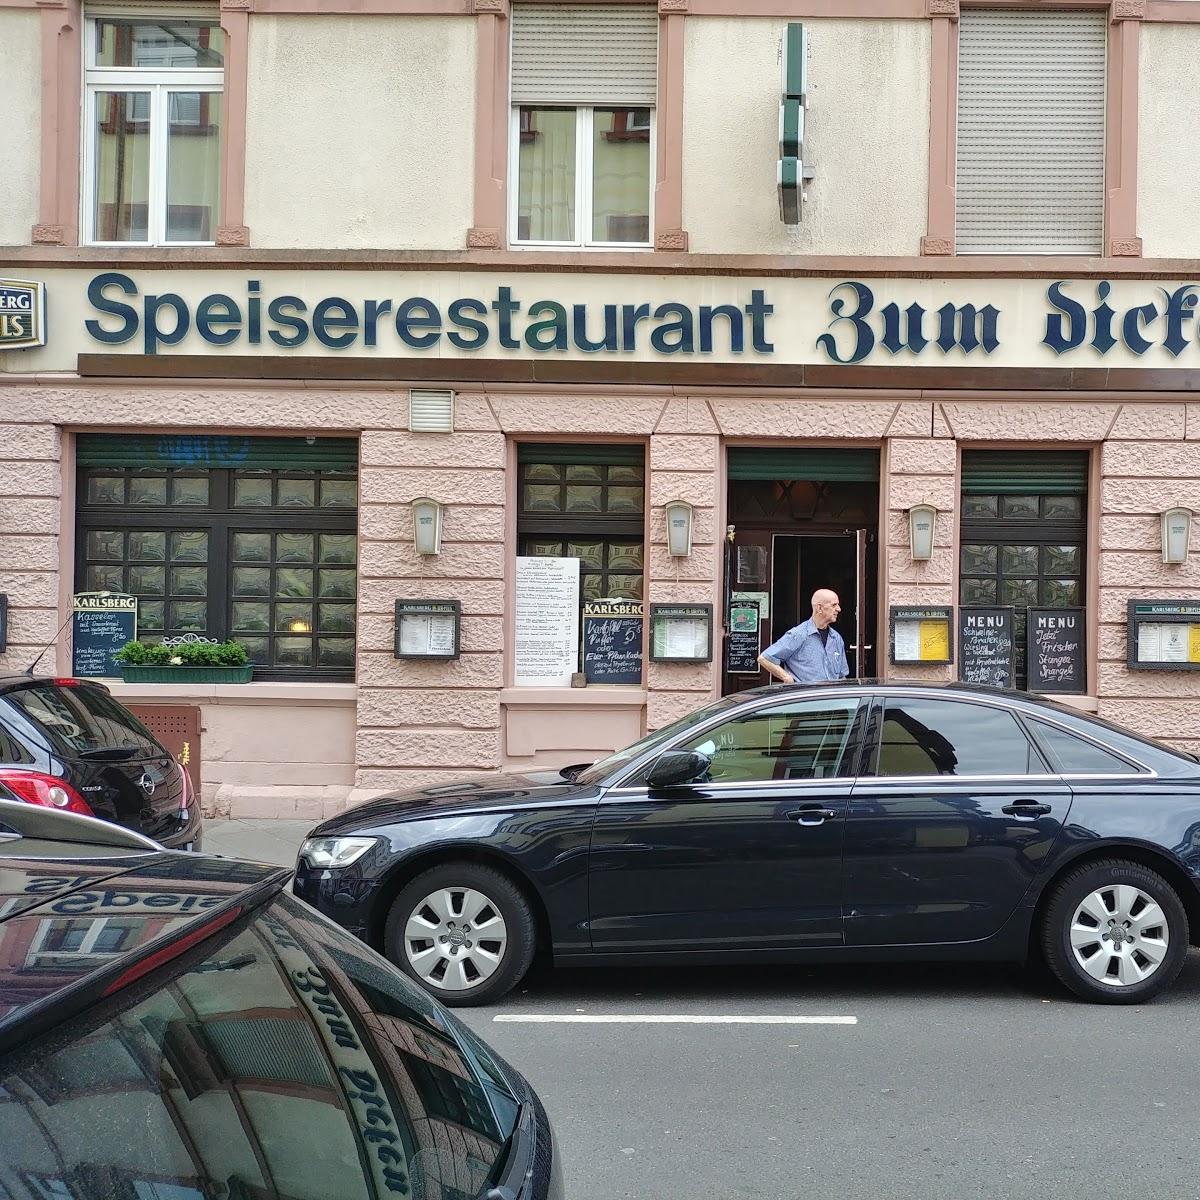 Restaurant "Zum Dicken Fritz" in Frankfurt am Main